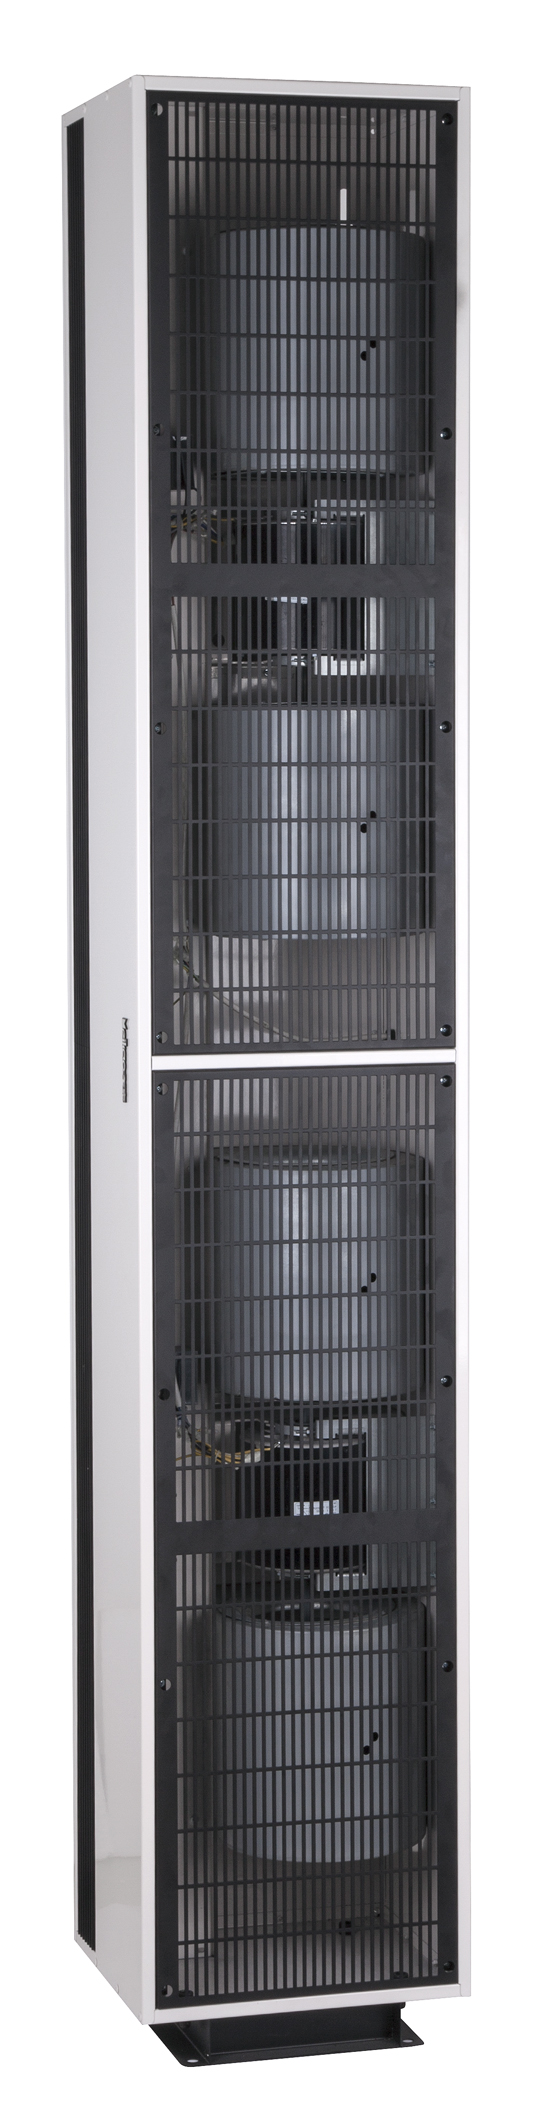 Puerta de congelador de cortinas de aire industriales aéreas frías de 6kw